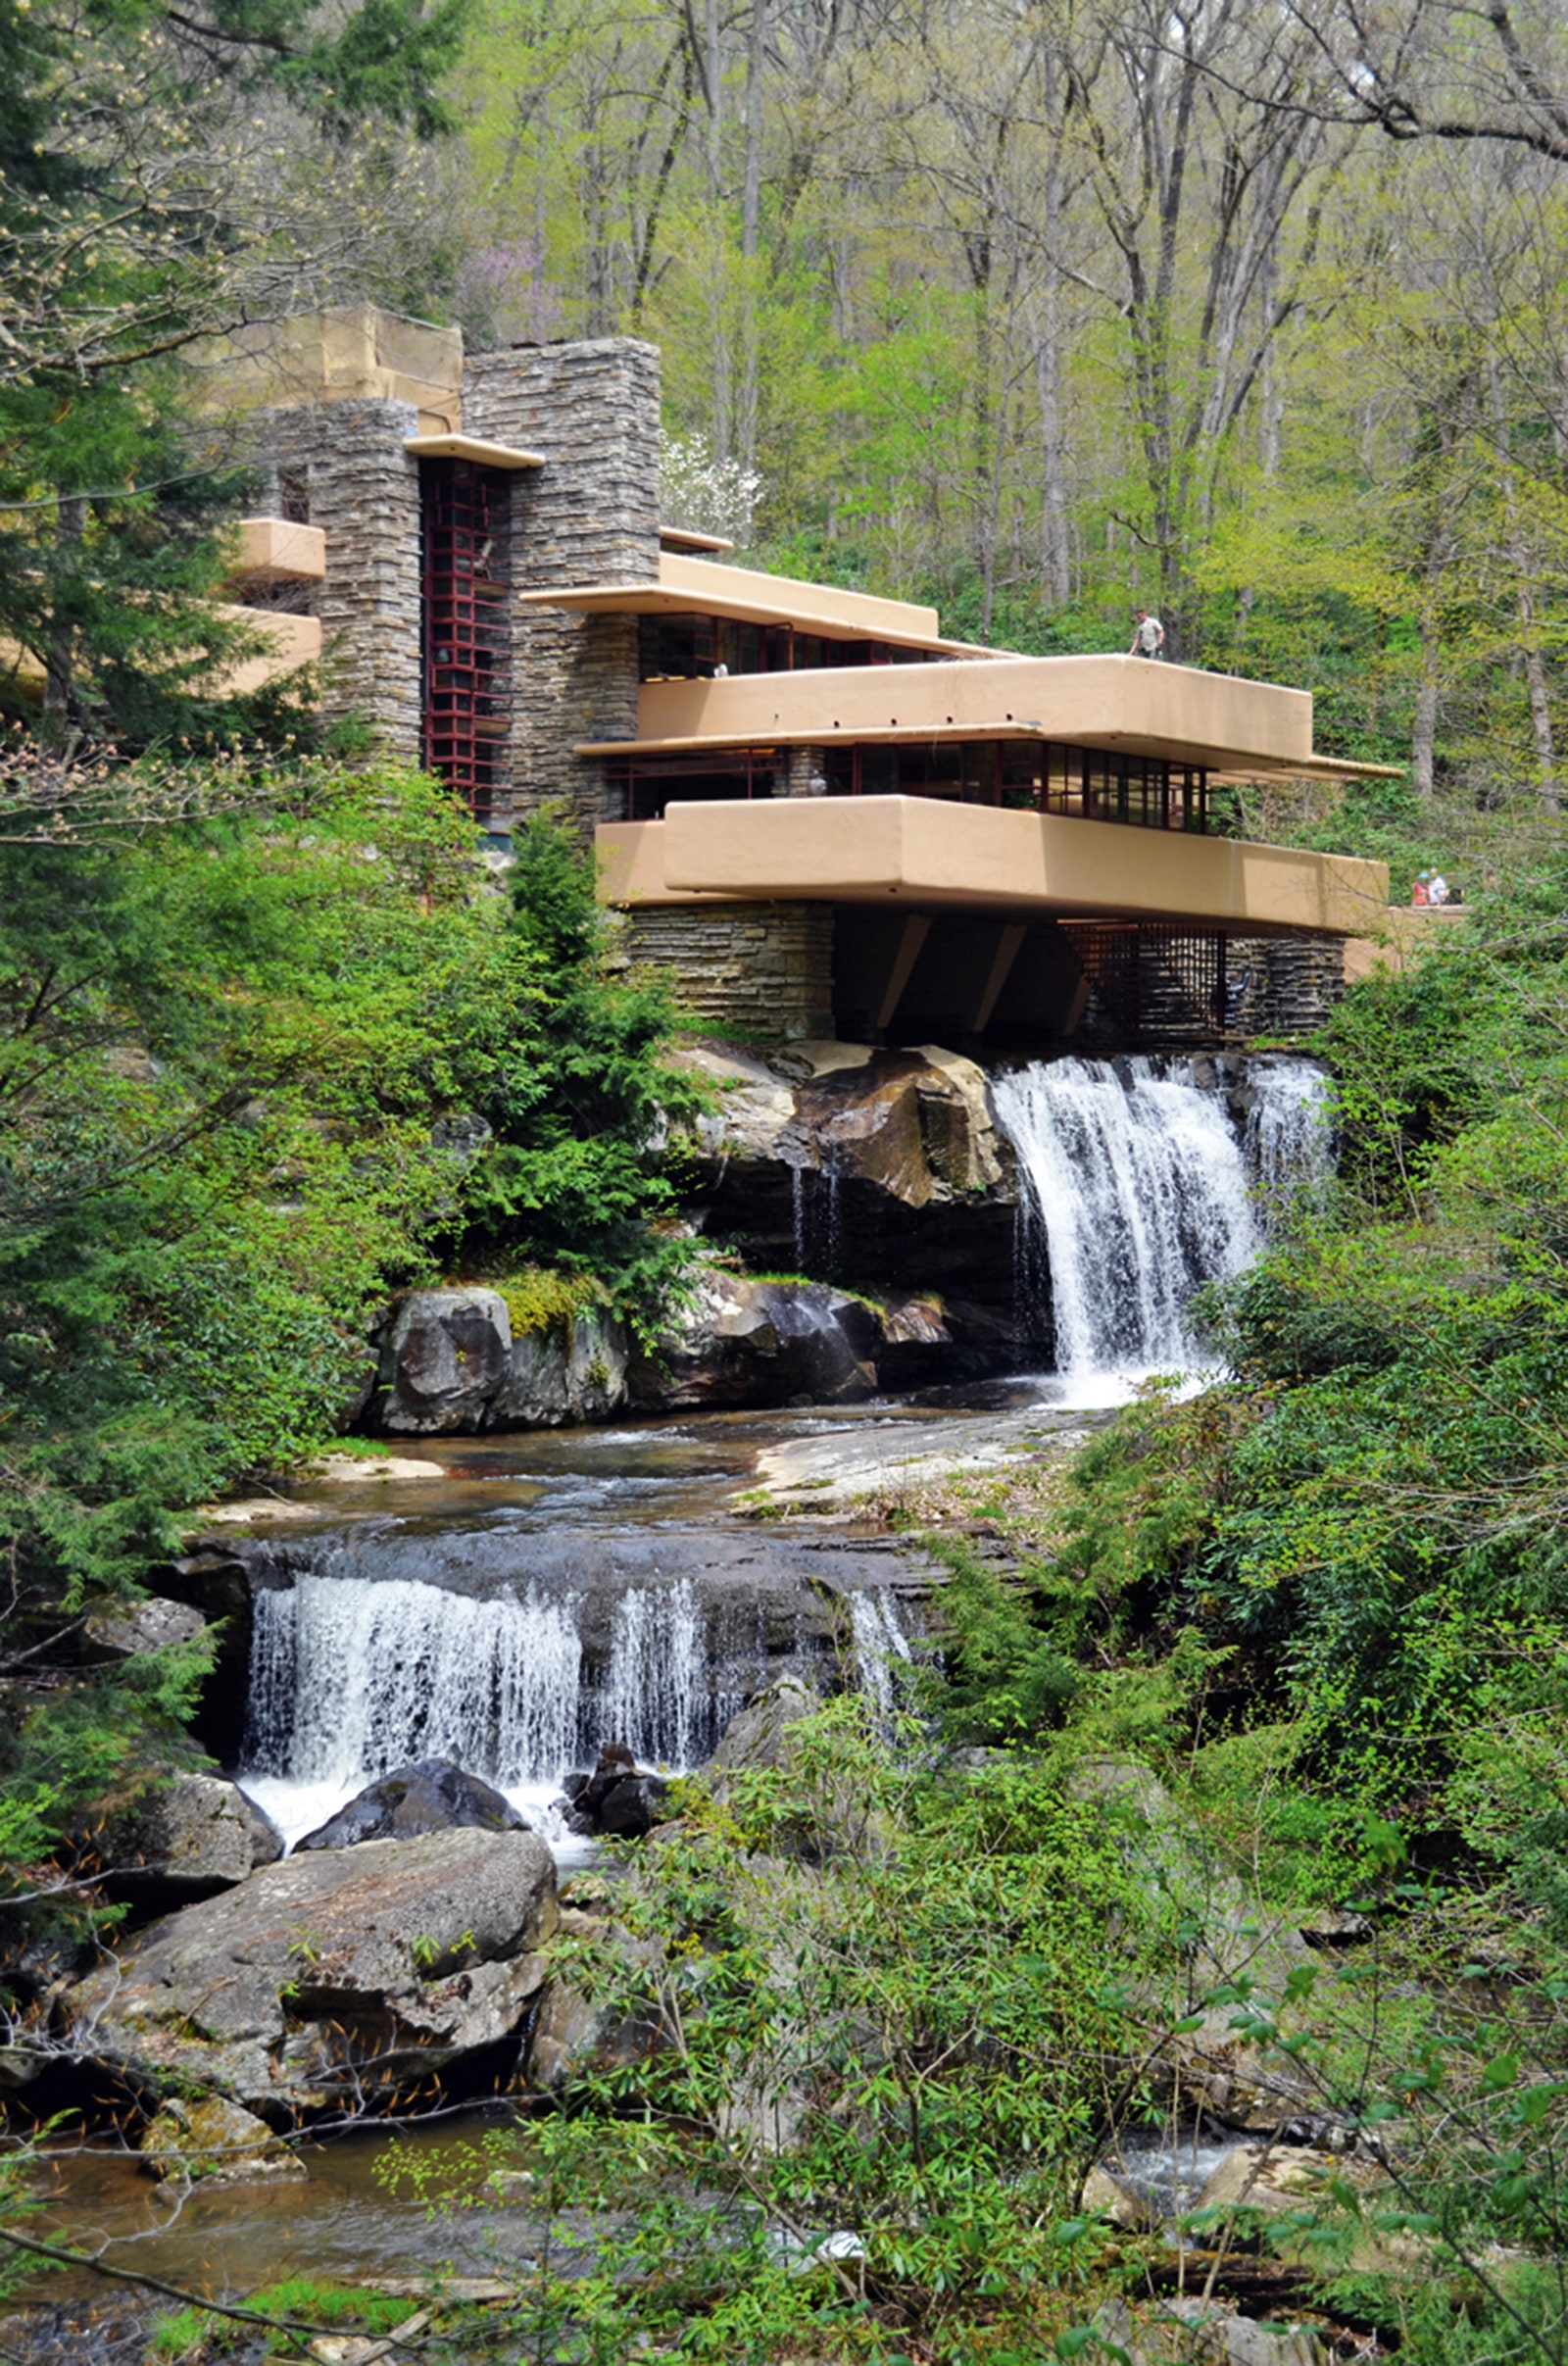 “Дом над водопадом” в 1935 году ­построил Фрэнк Ллойд Райт в стиле органической архитектуры.